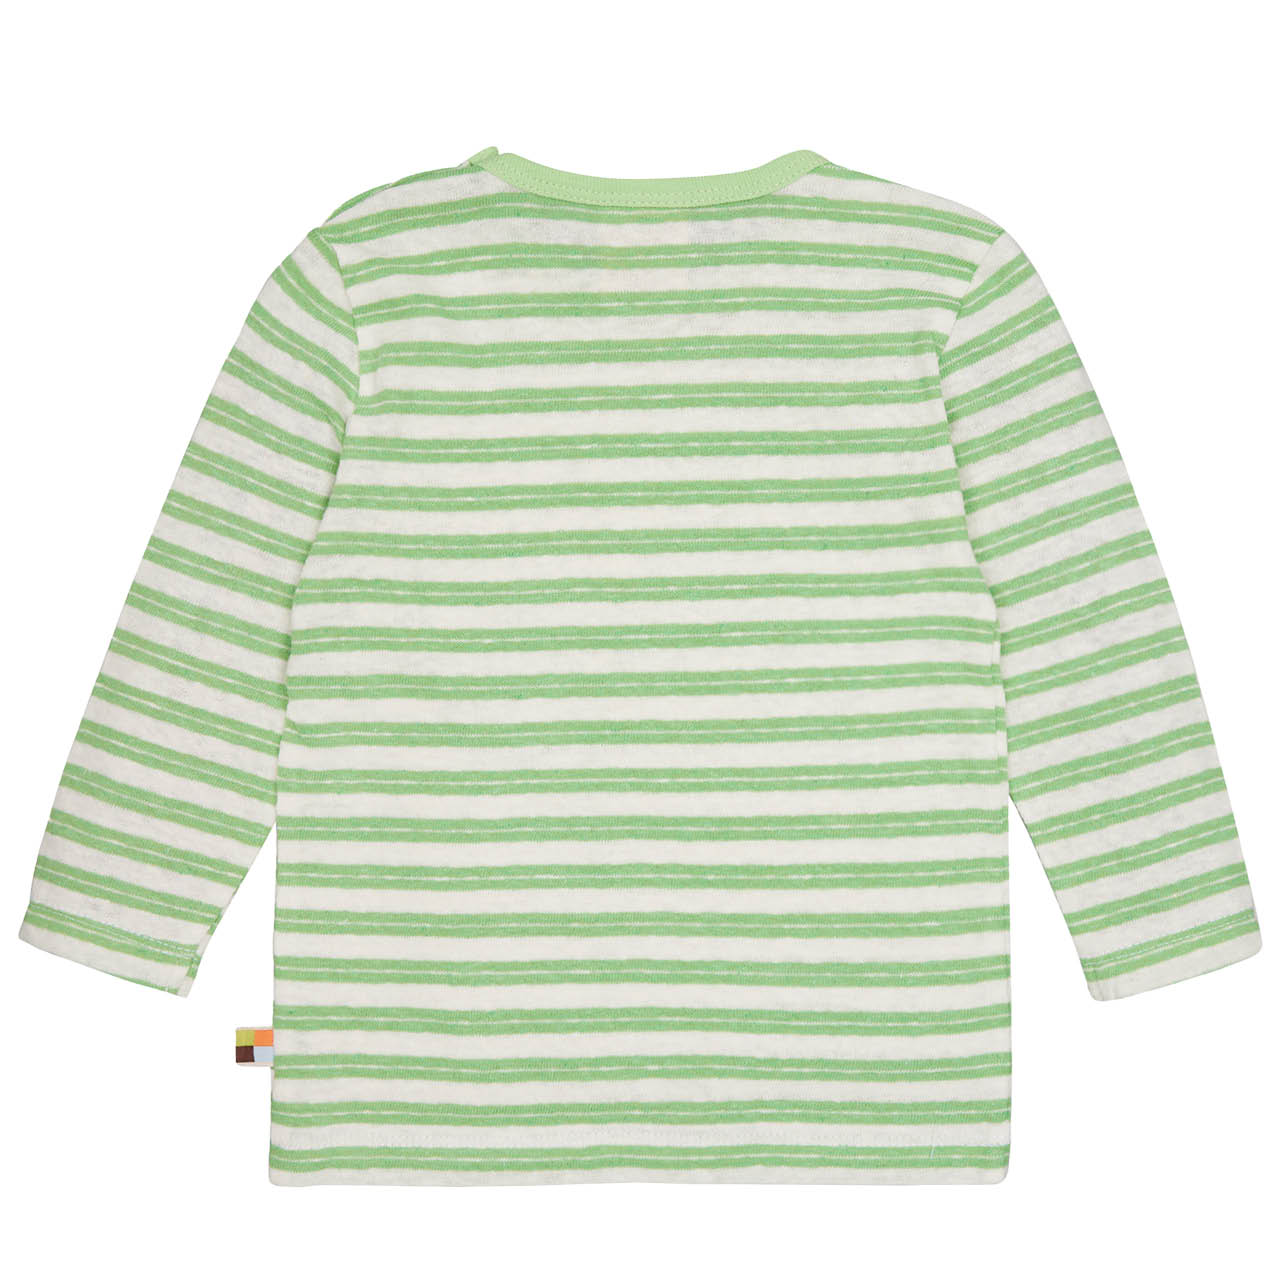 Luftiges Leinen Shirt langarm hellgrün geringelt